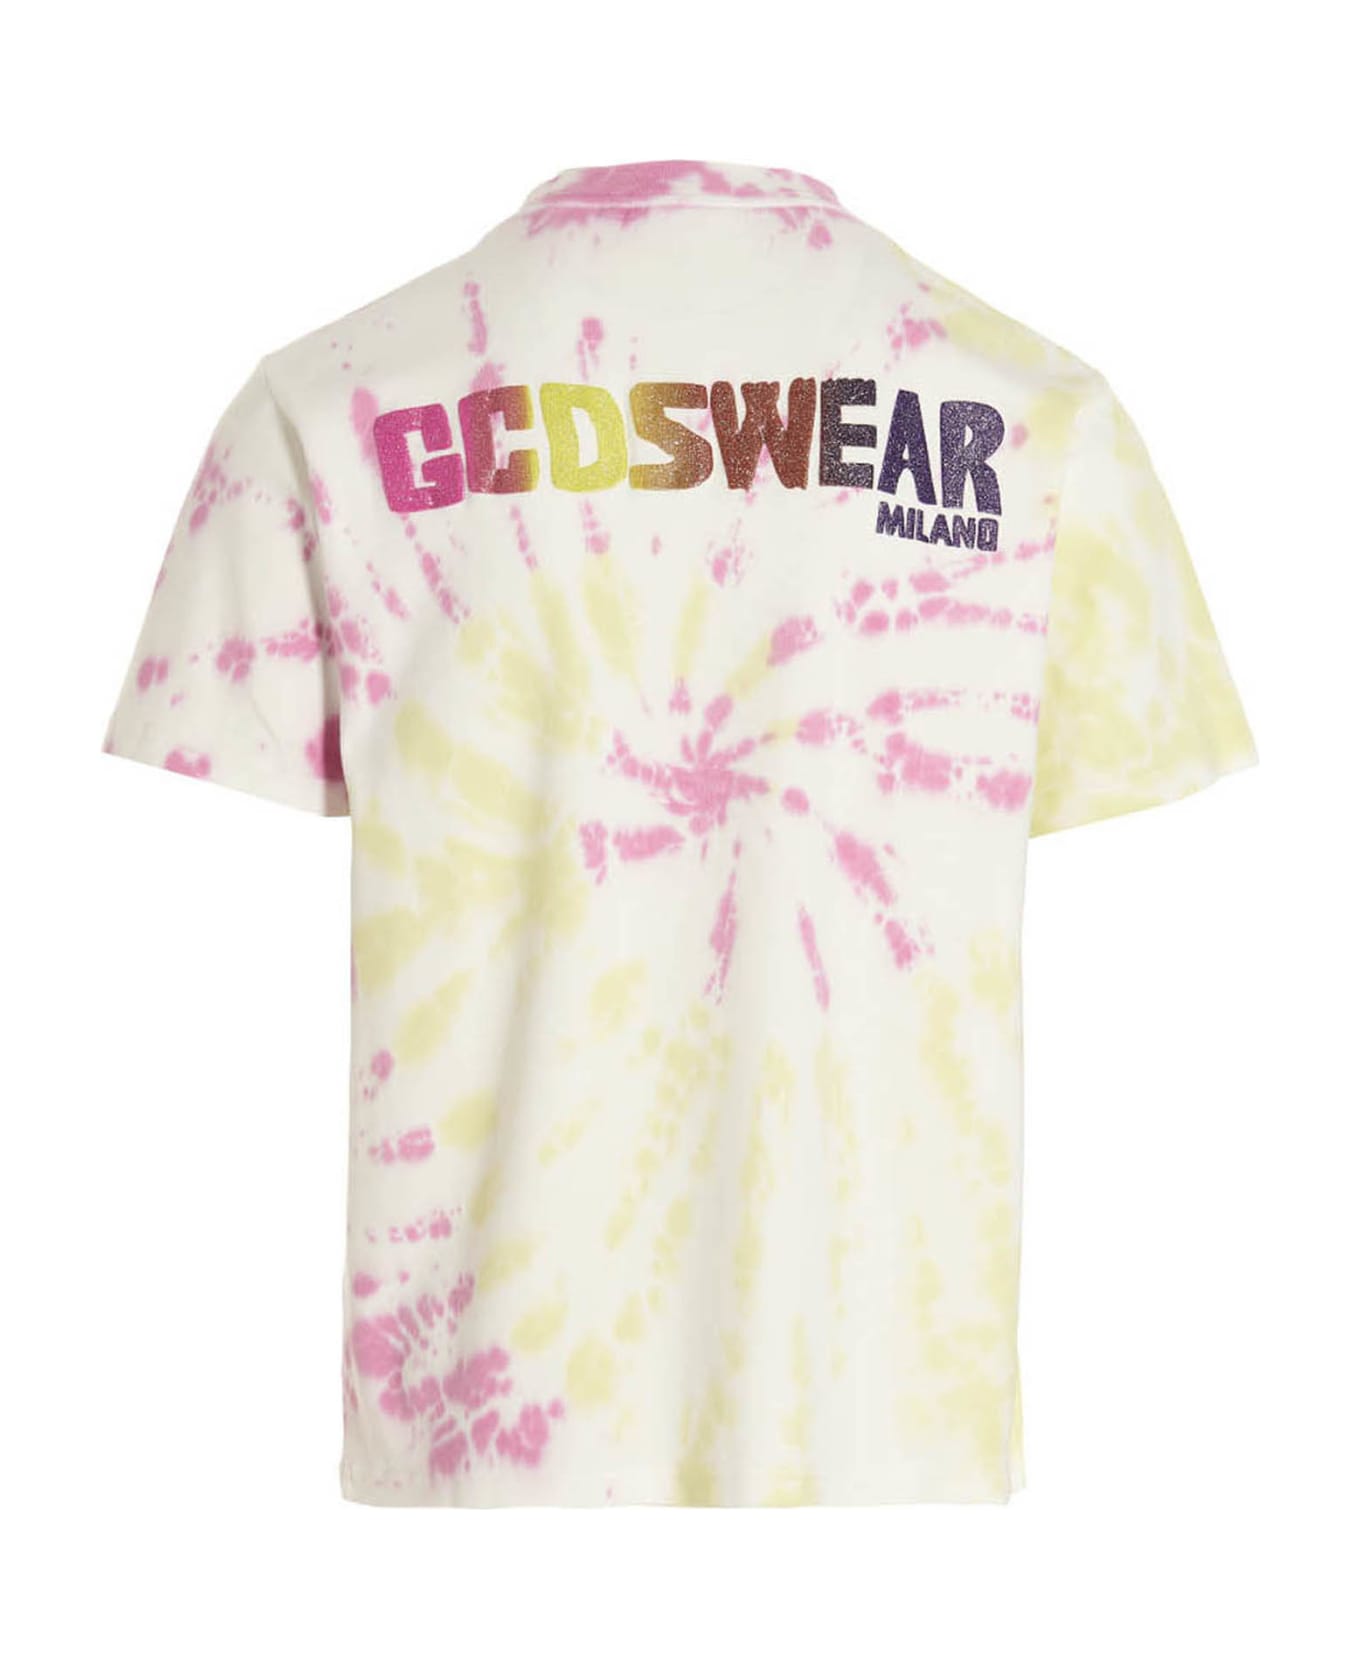 GCDS T-shirt 'gcds Tie Dye' - Multicolor シャツ